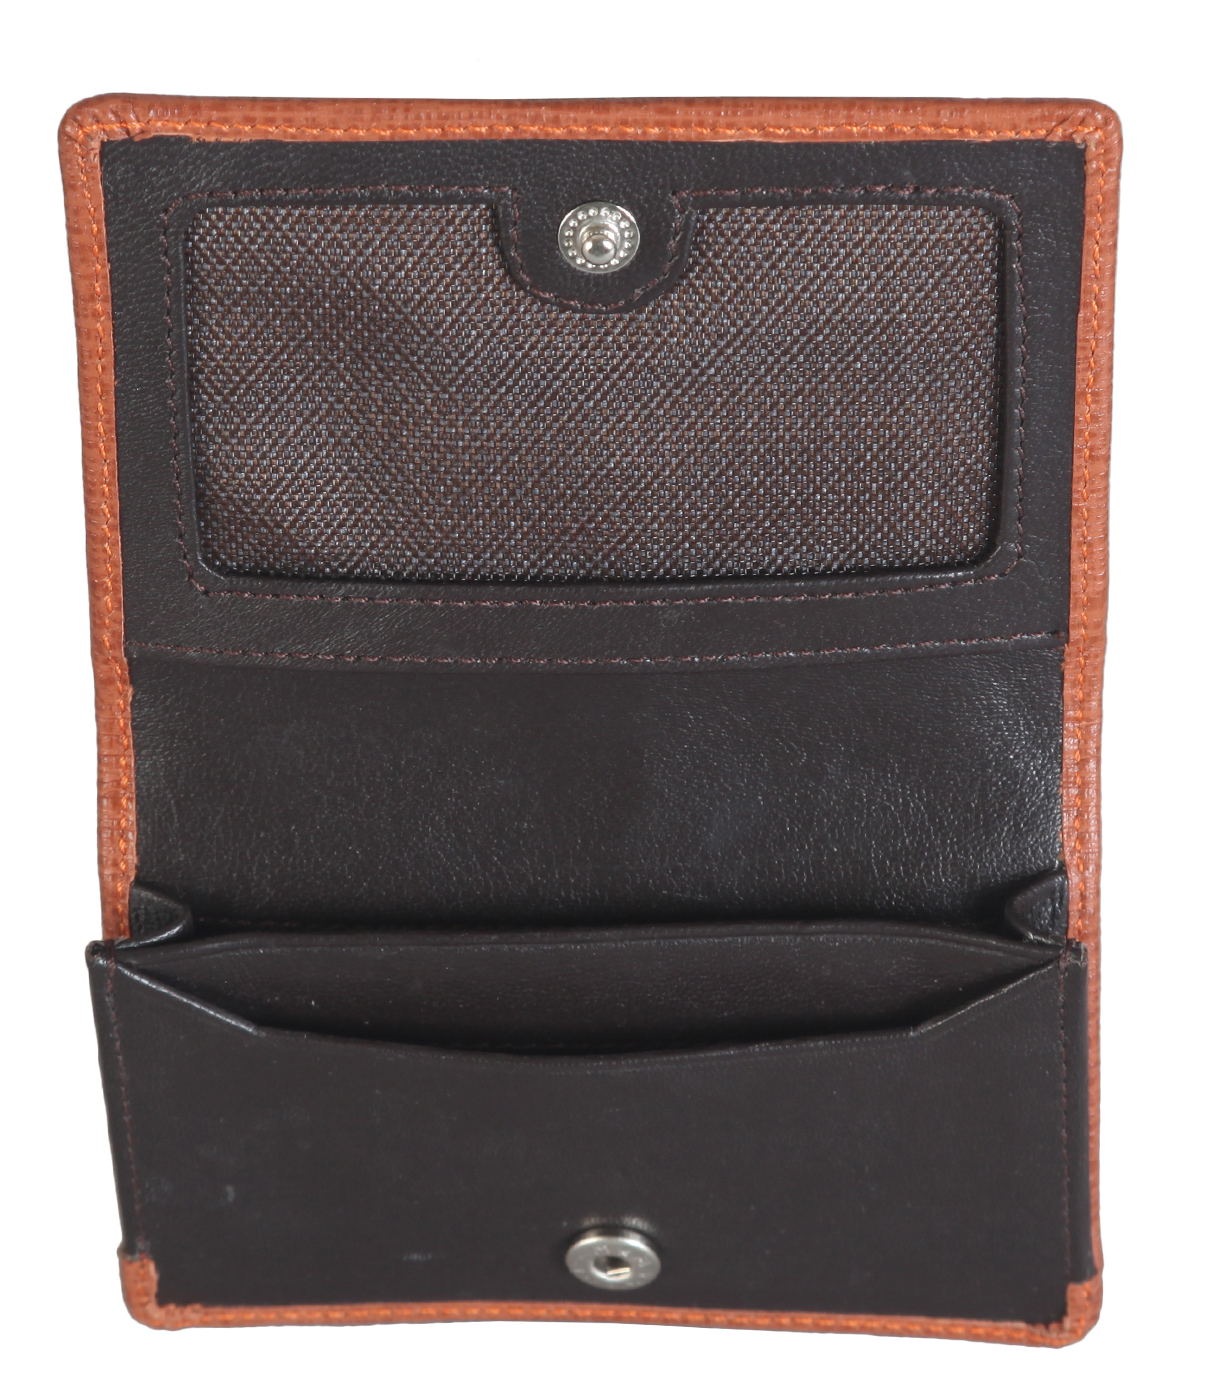 W302--Credit card cum business card case in Genuine Leather - Tan